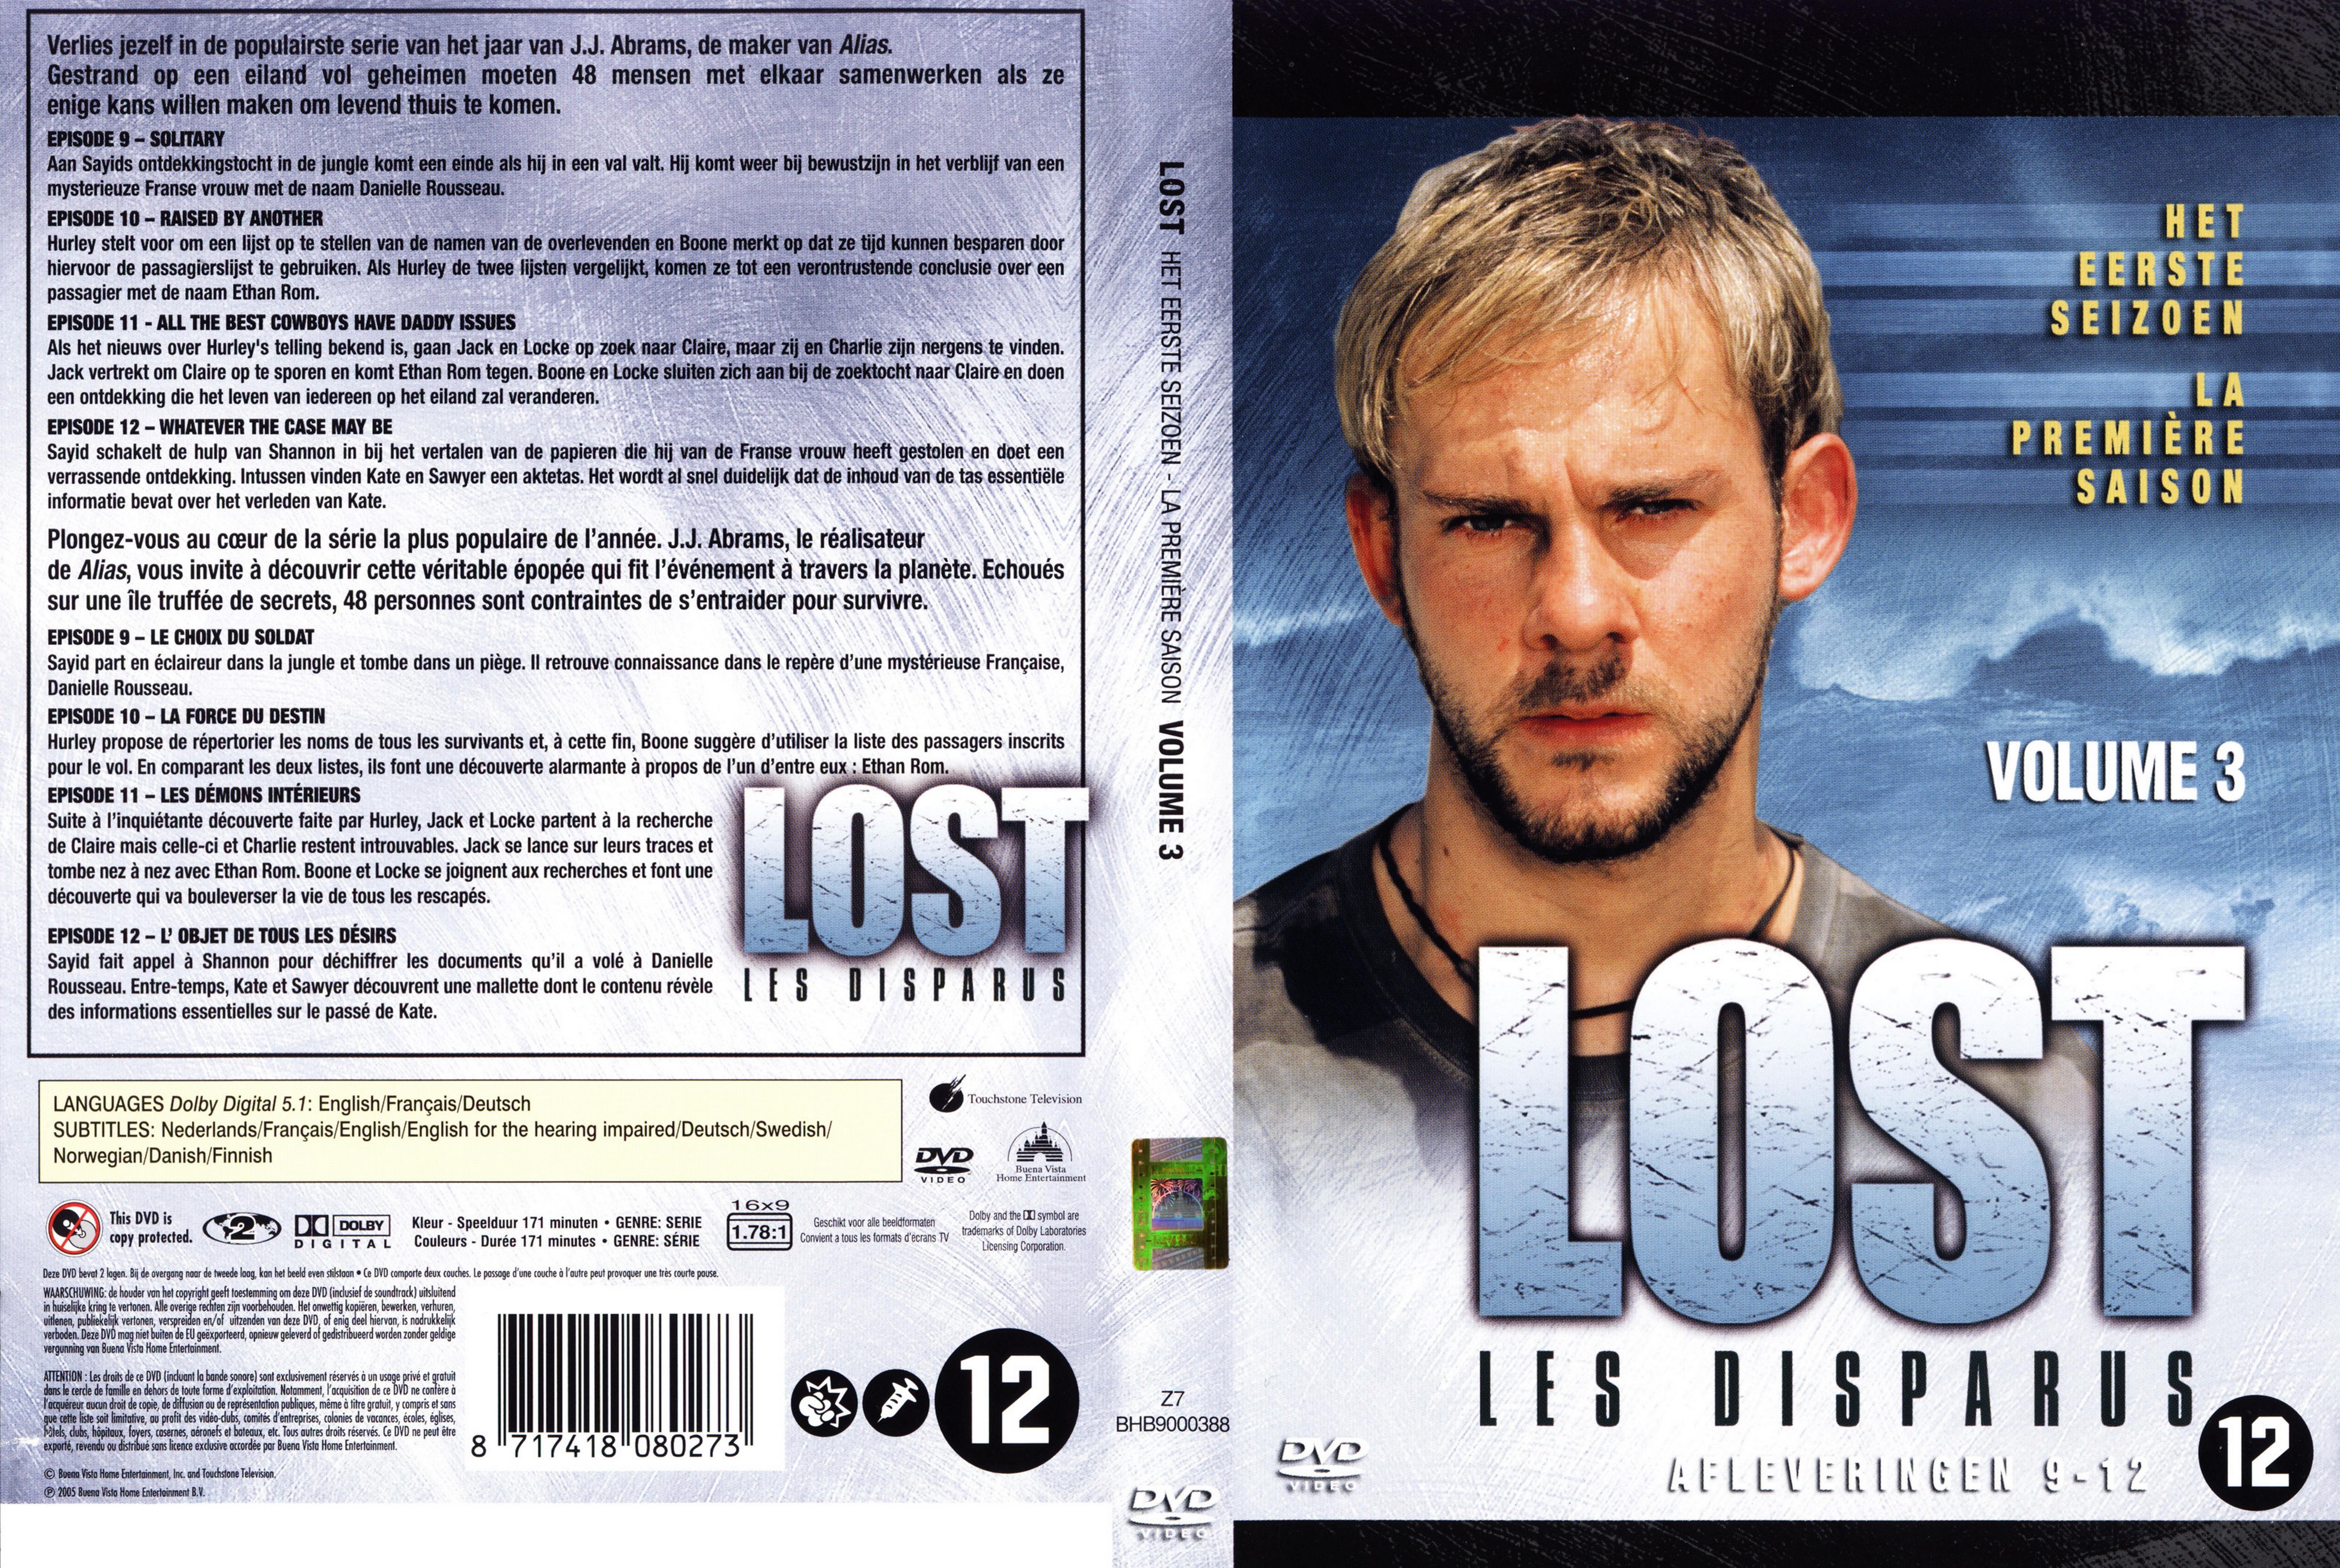 Jaquette DVD Lost Saison 1 DVD 3 v2